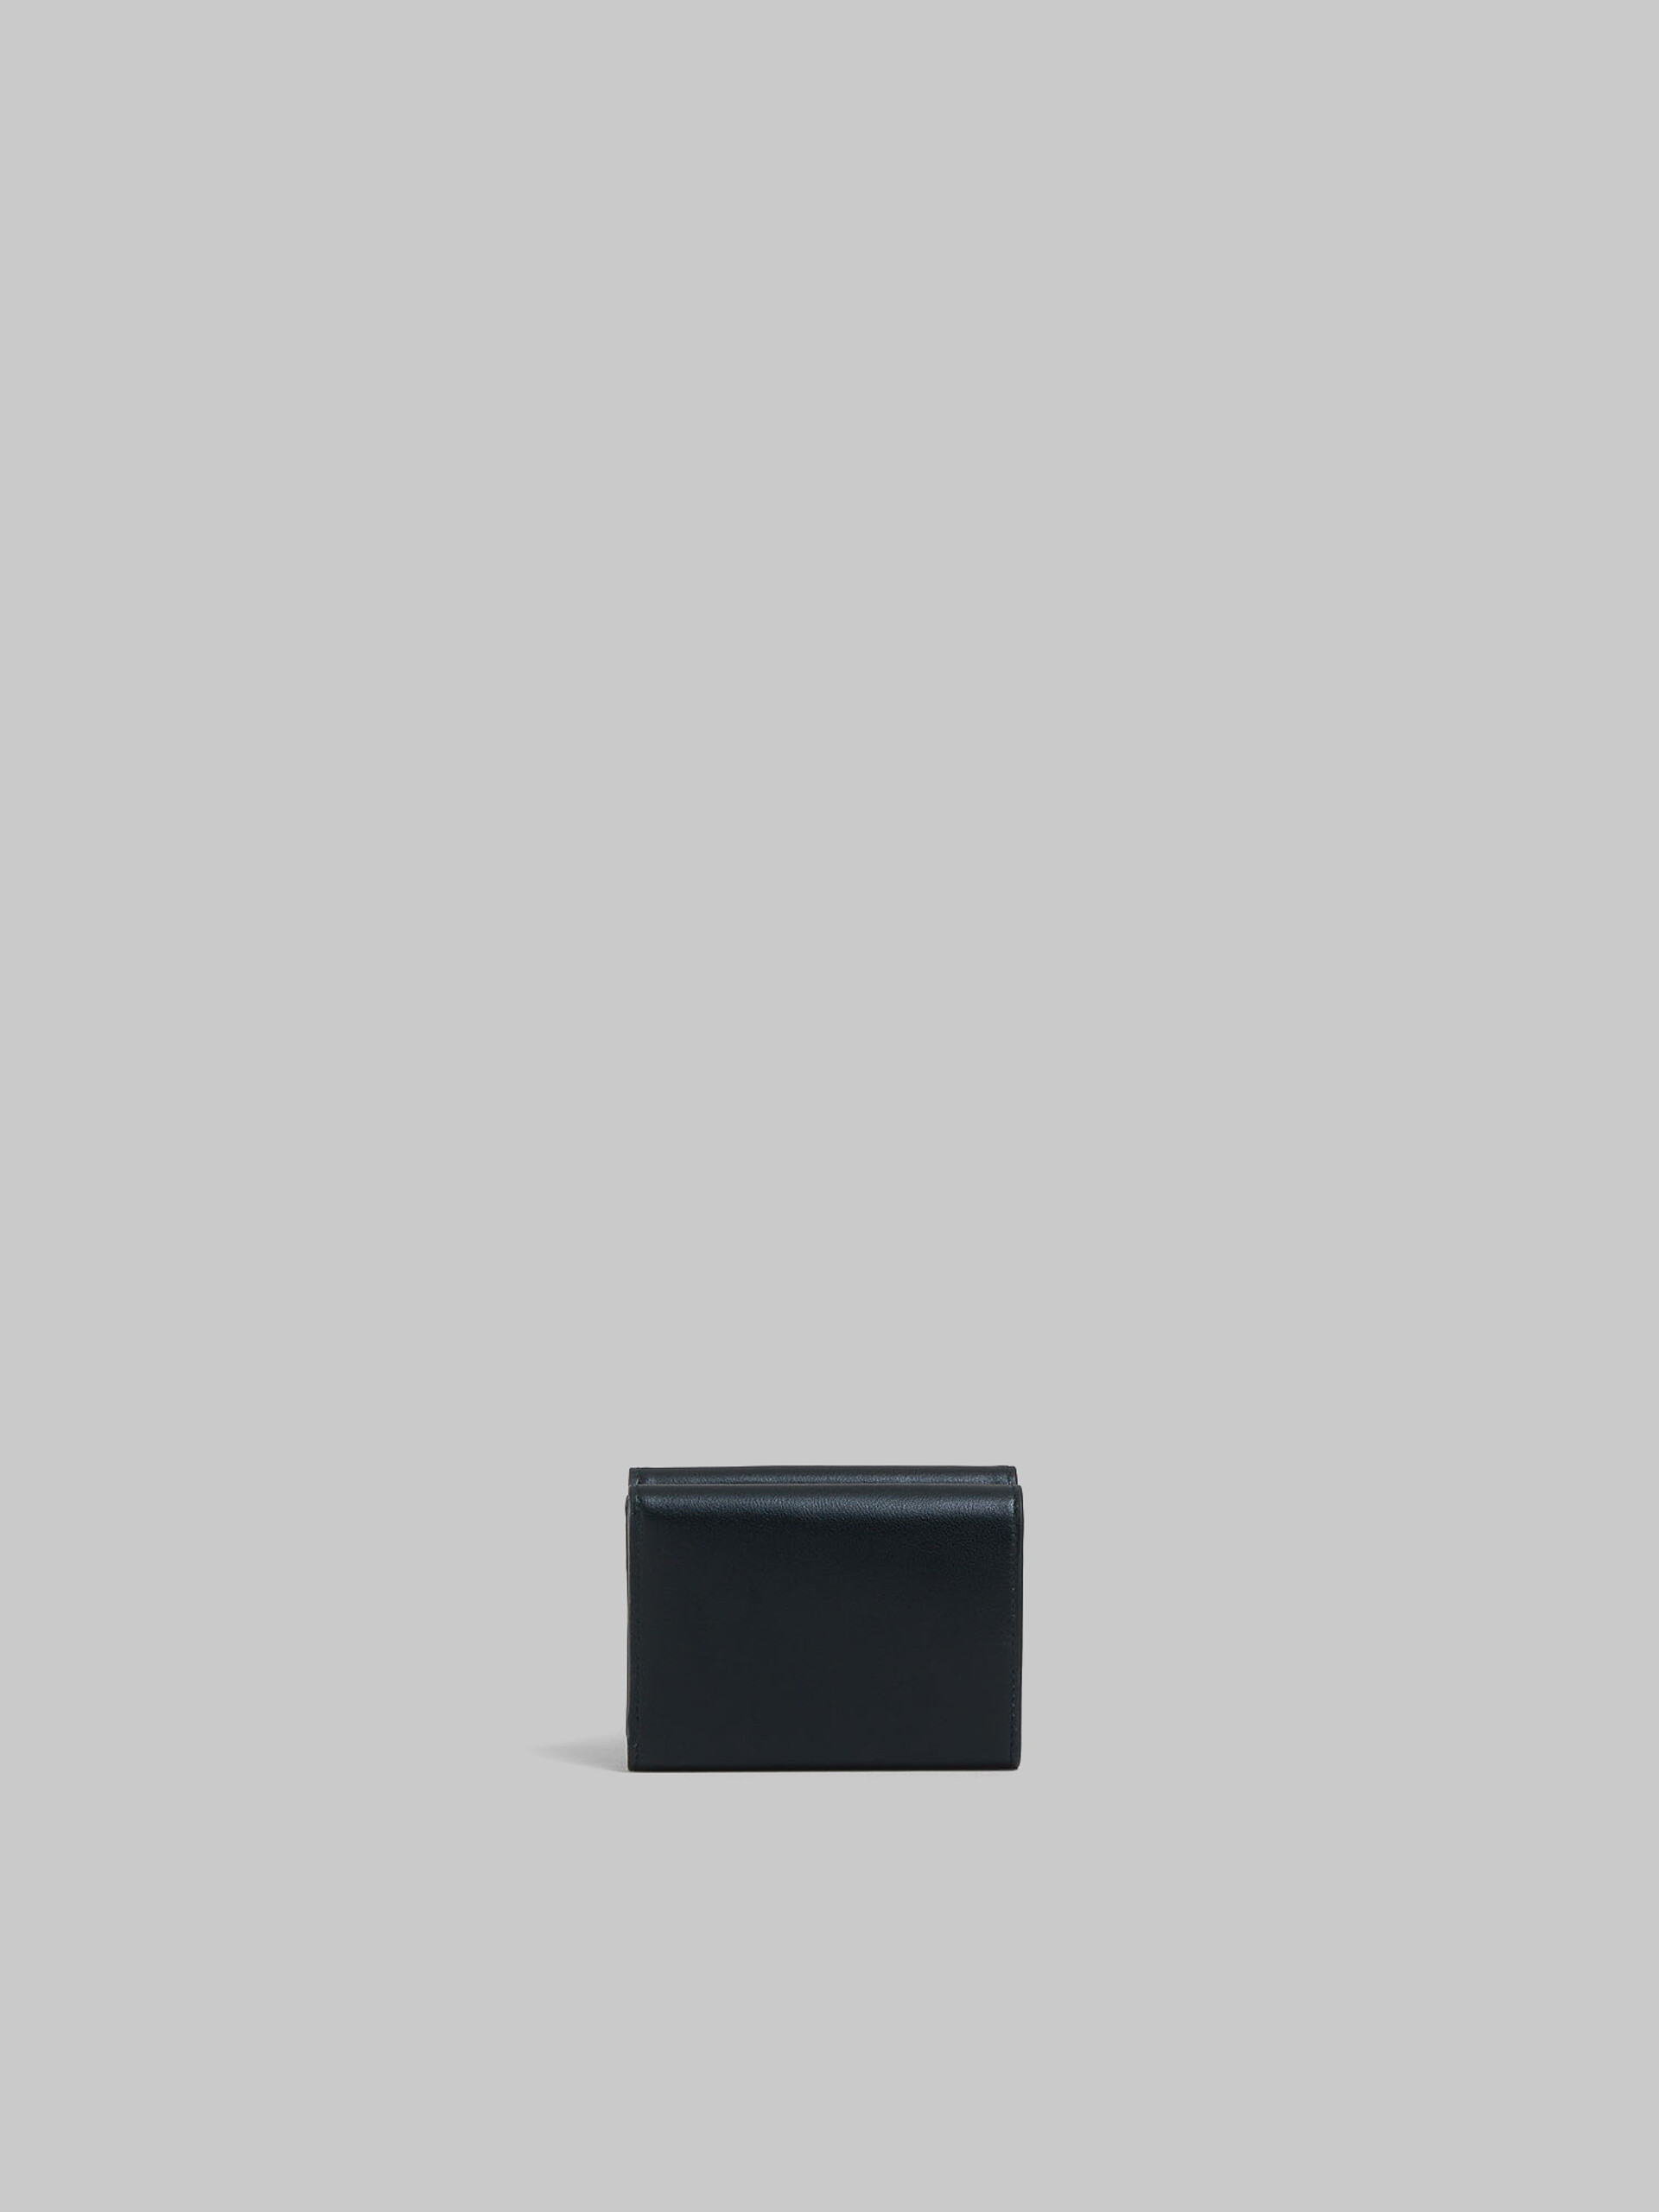 Portafoglio tri-fold in pelle nera con logo Marni in rilievo - Portafogli - Image 3